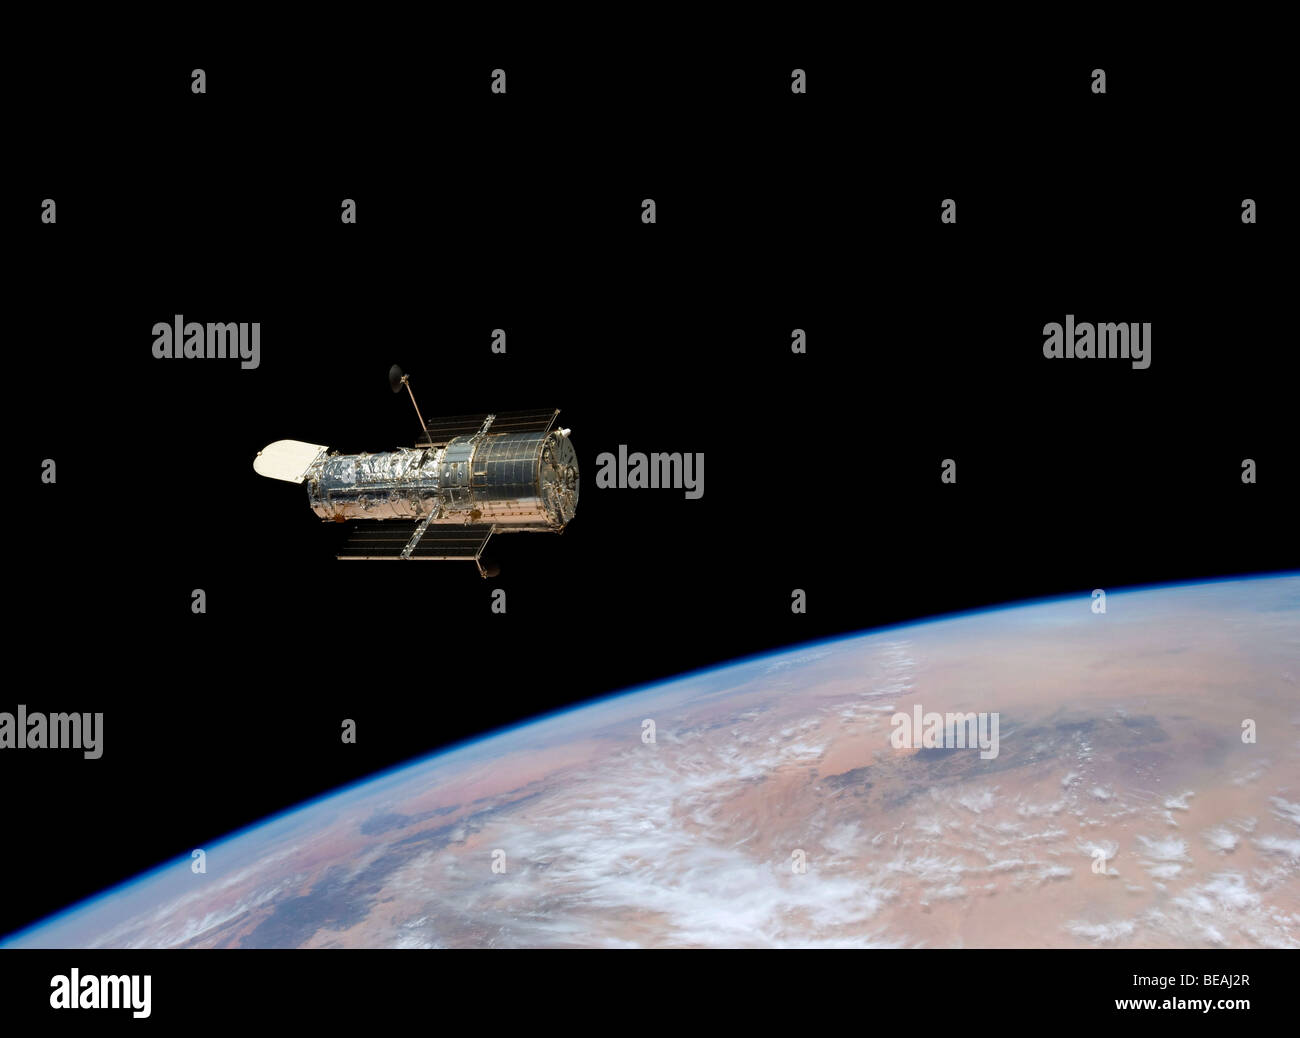 Télescope spatial Hubble en 2009 après avoir été rénové. Version optimisée et améliorée d'un original de l'image de la NASA. Crédit NASA Banque D'Images